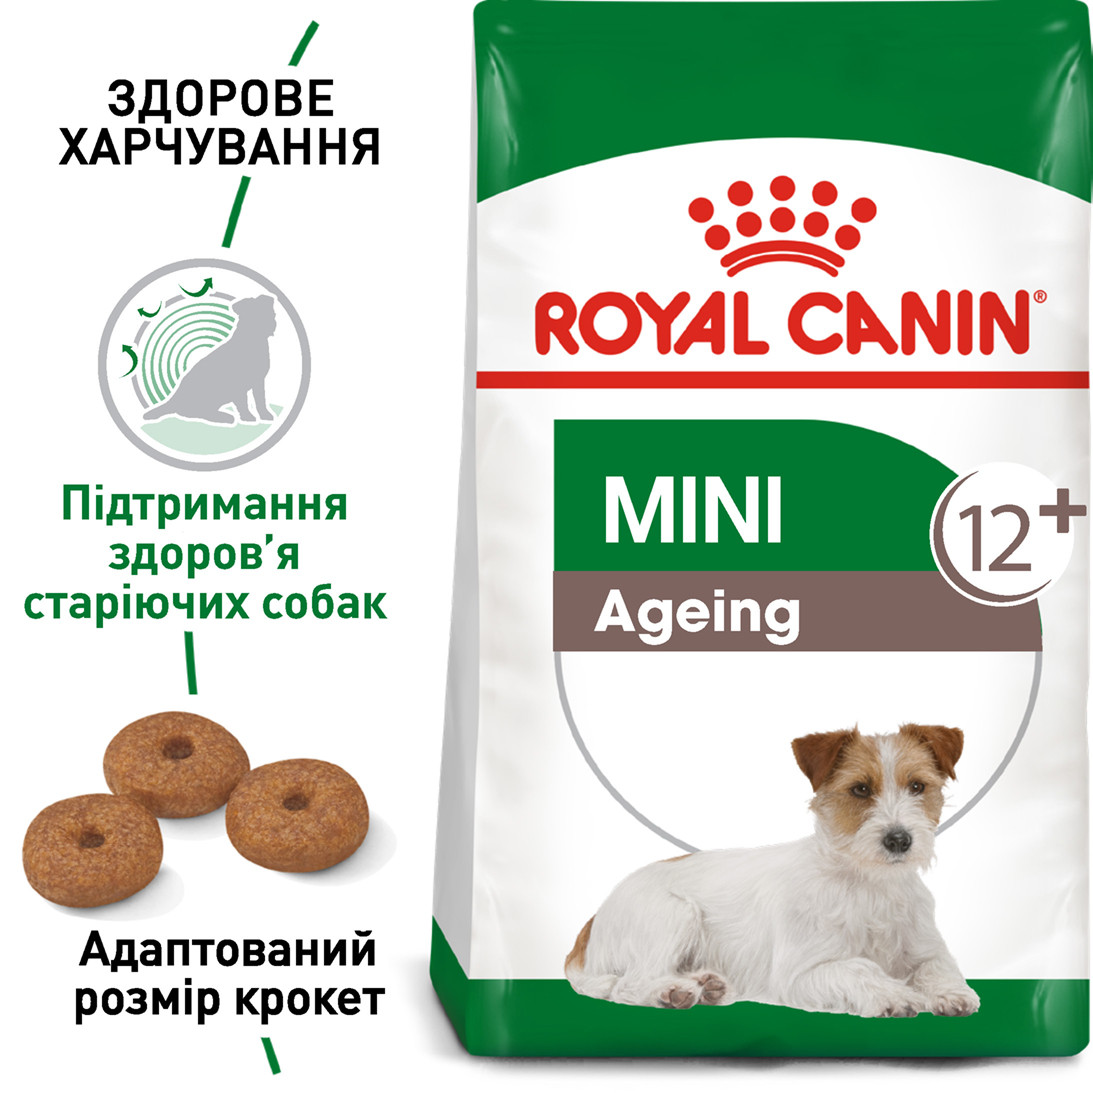 Royal Canin Mini Ageing 12+ сухий корм для собак дрібних порід від 12 років, 0.8КГ